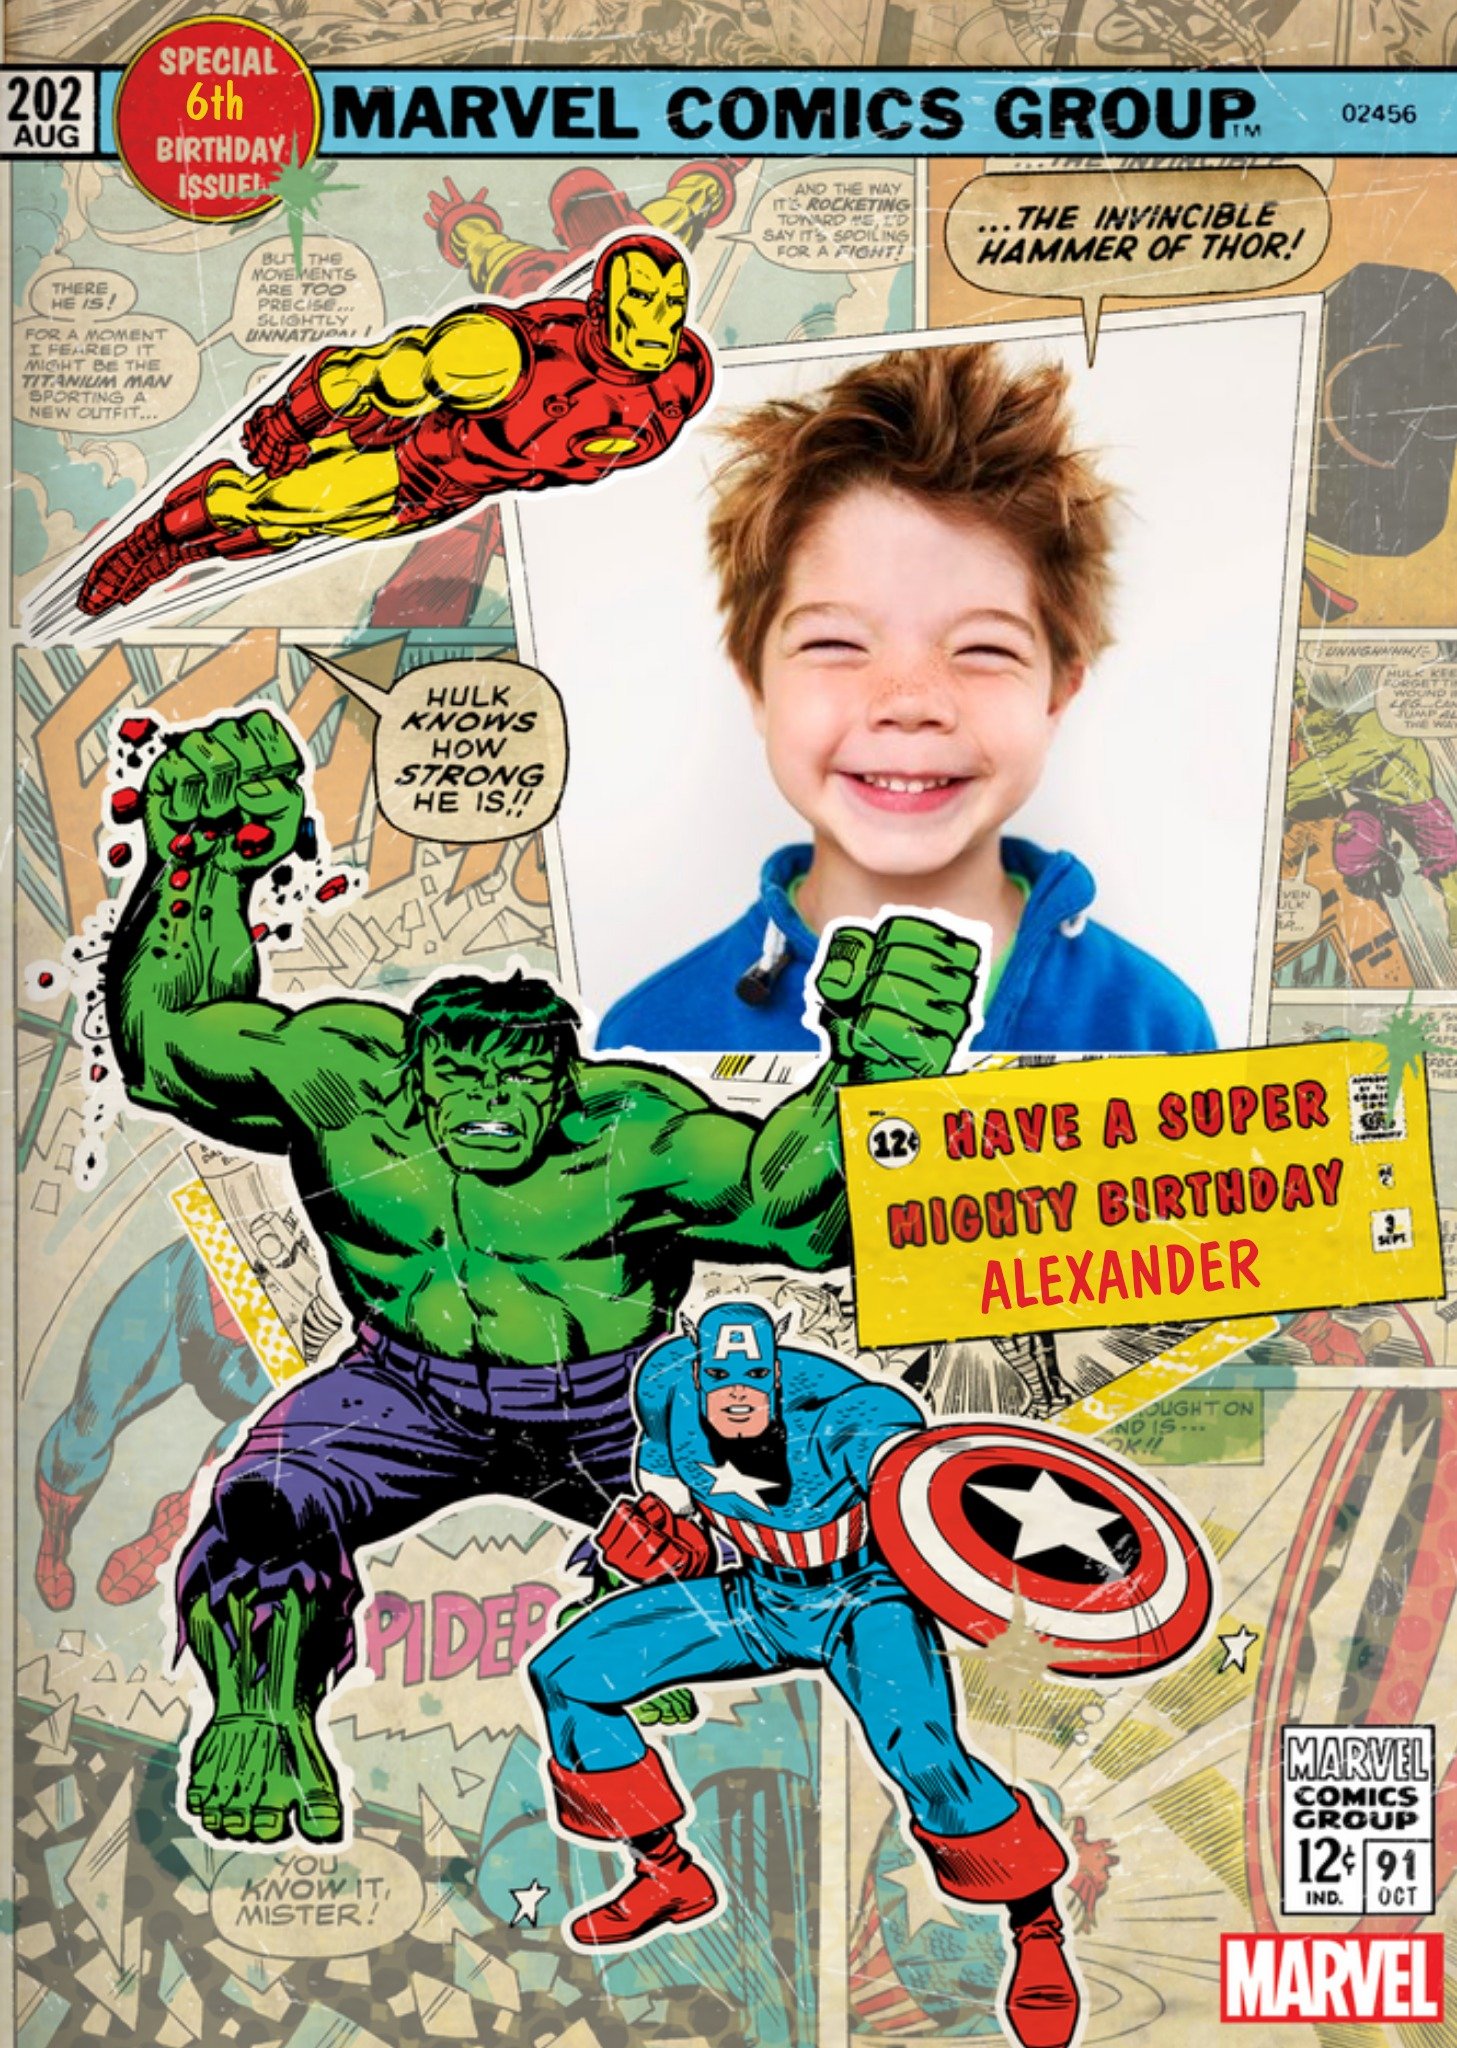 Marvel Photo Dad's Birthday Card. Ecard